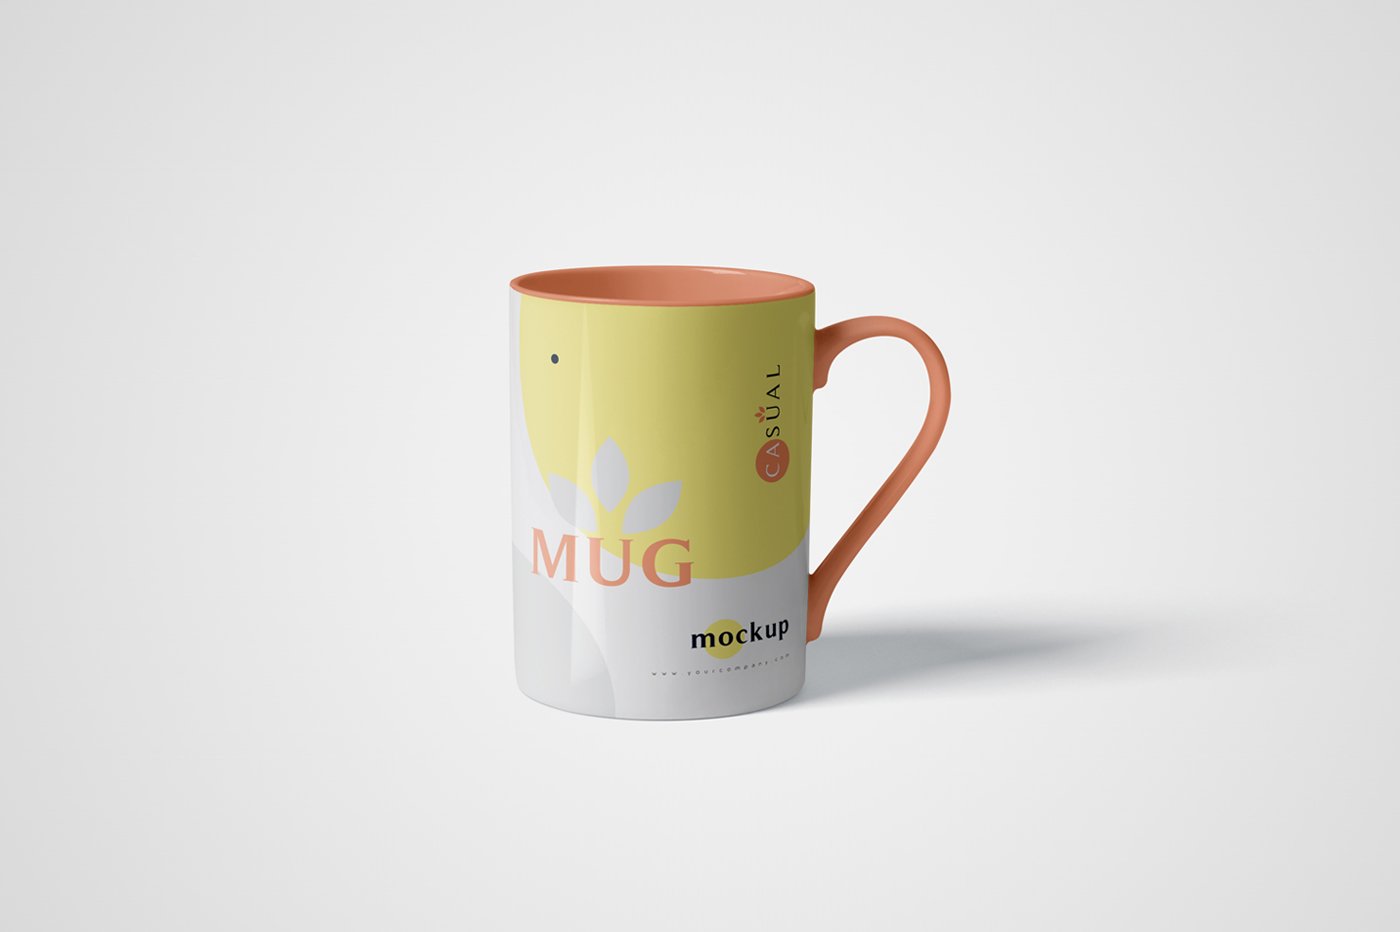 5 Mug Mockups cover image.